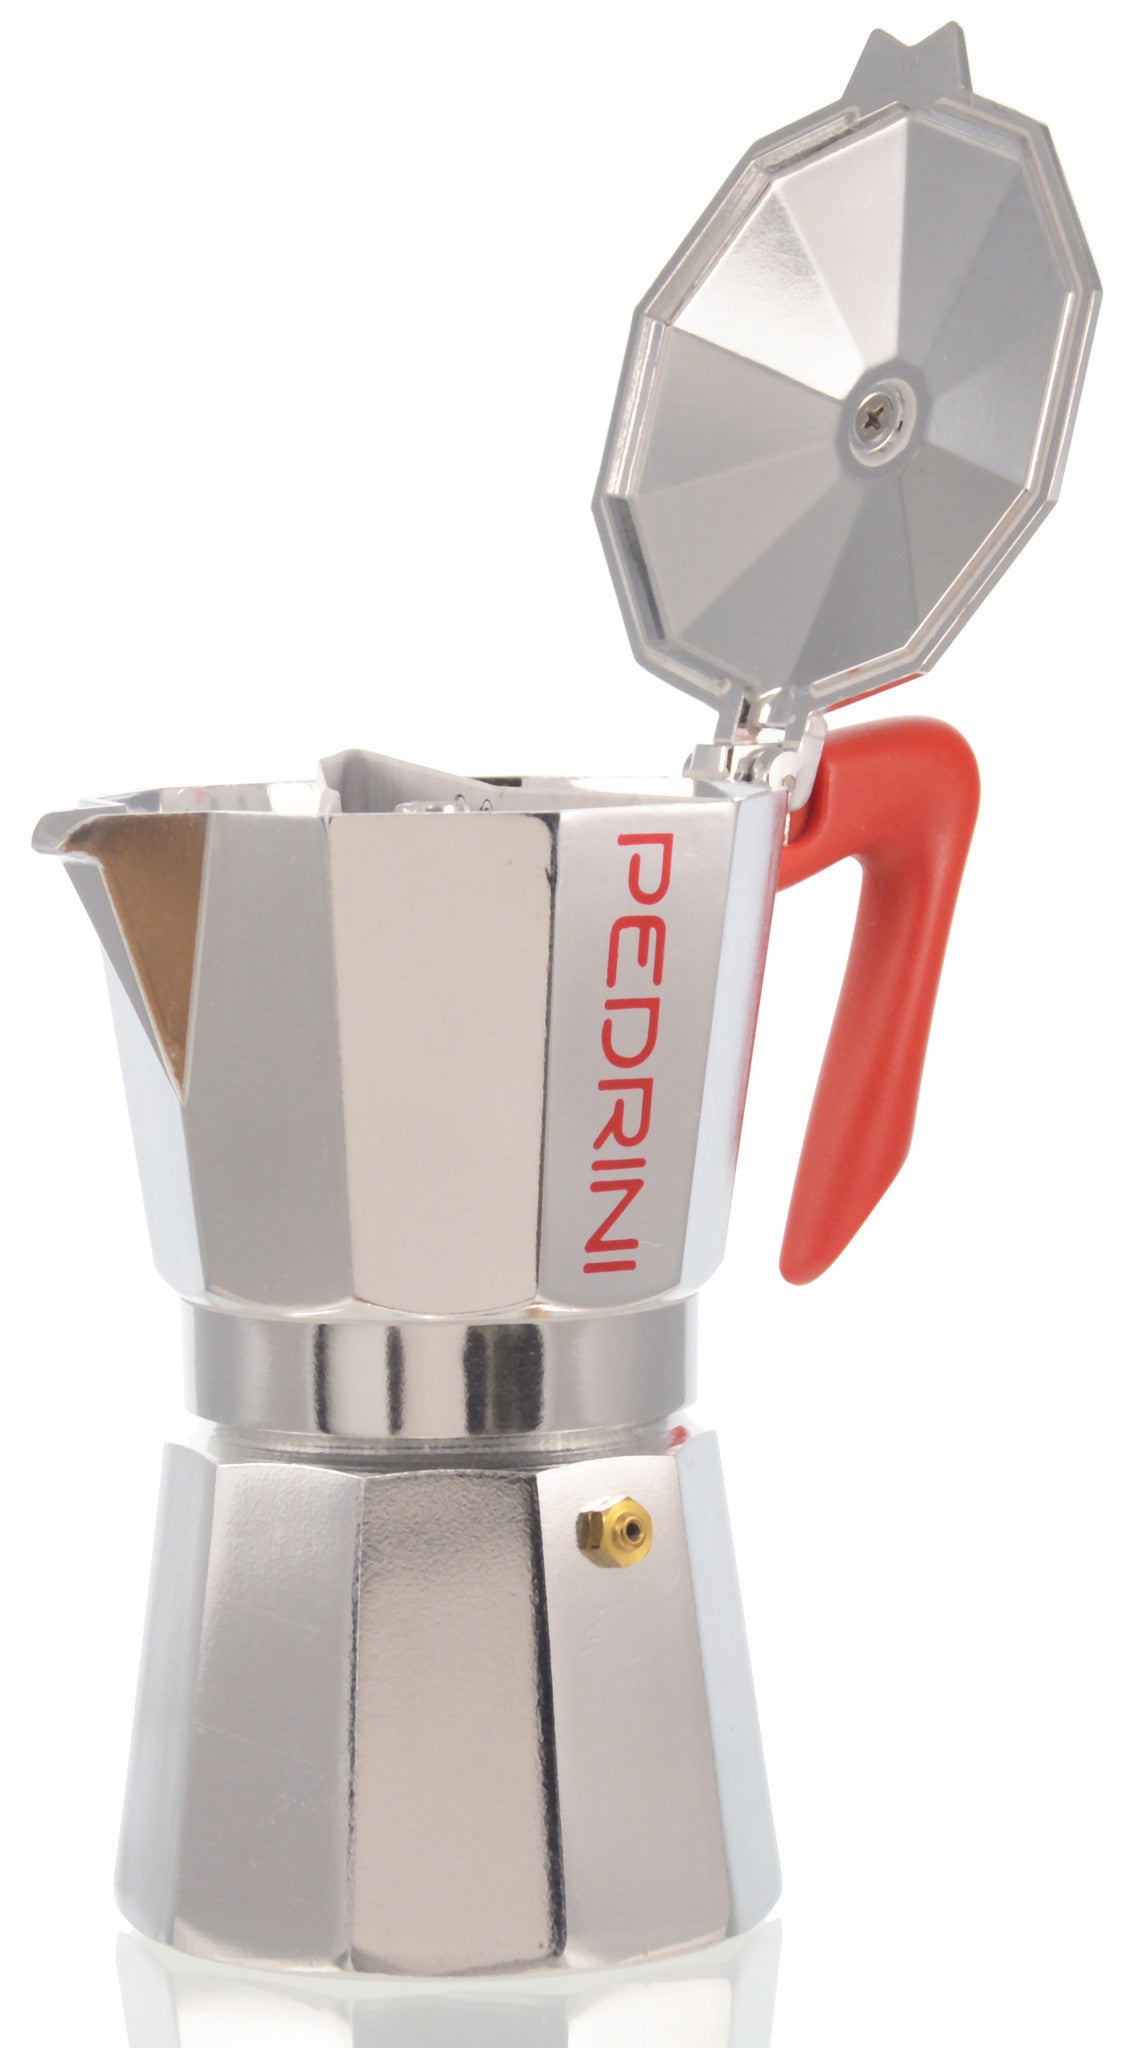 Pedrini Espresso Single Serving Stove Top Percolator Coffee Maker - Black